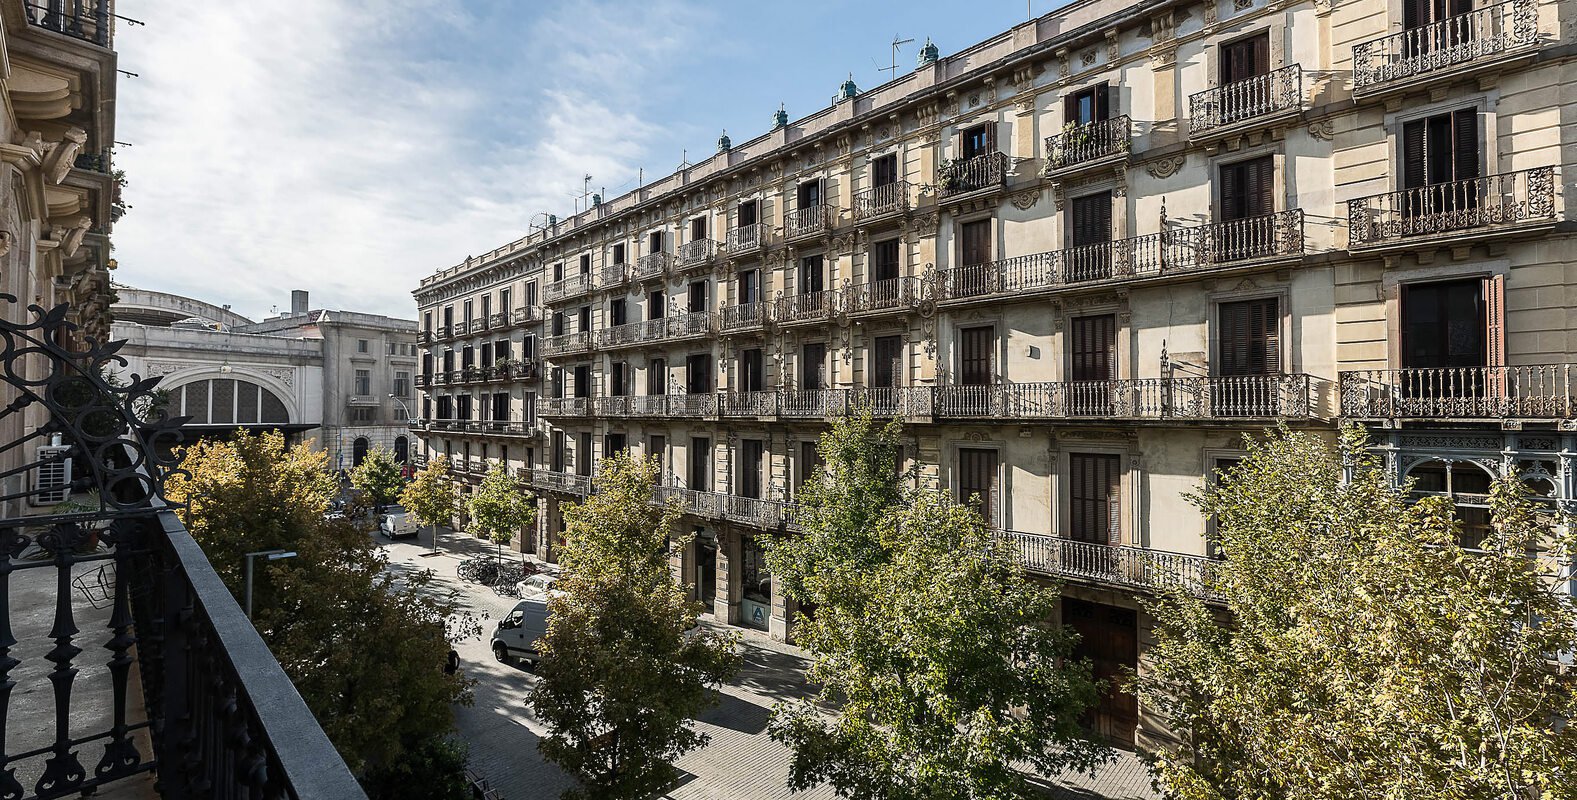 Home Club inaugura un nuevo edificio de alquiler flexible en Barcelona